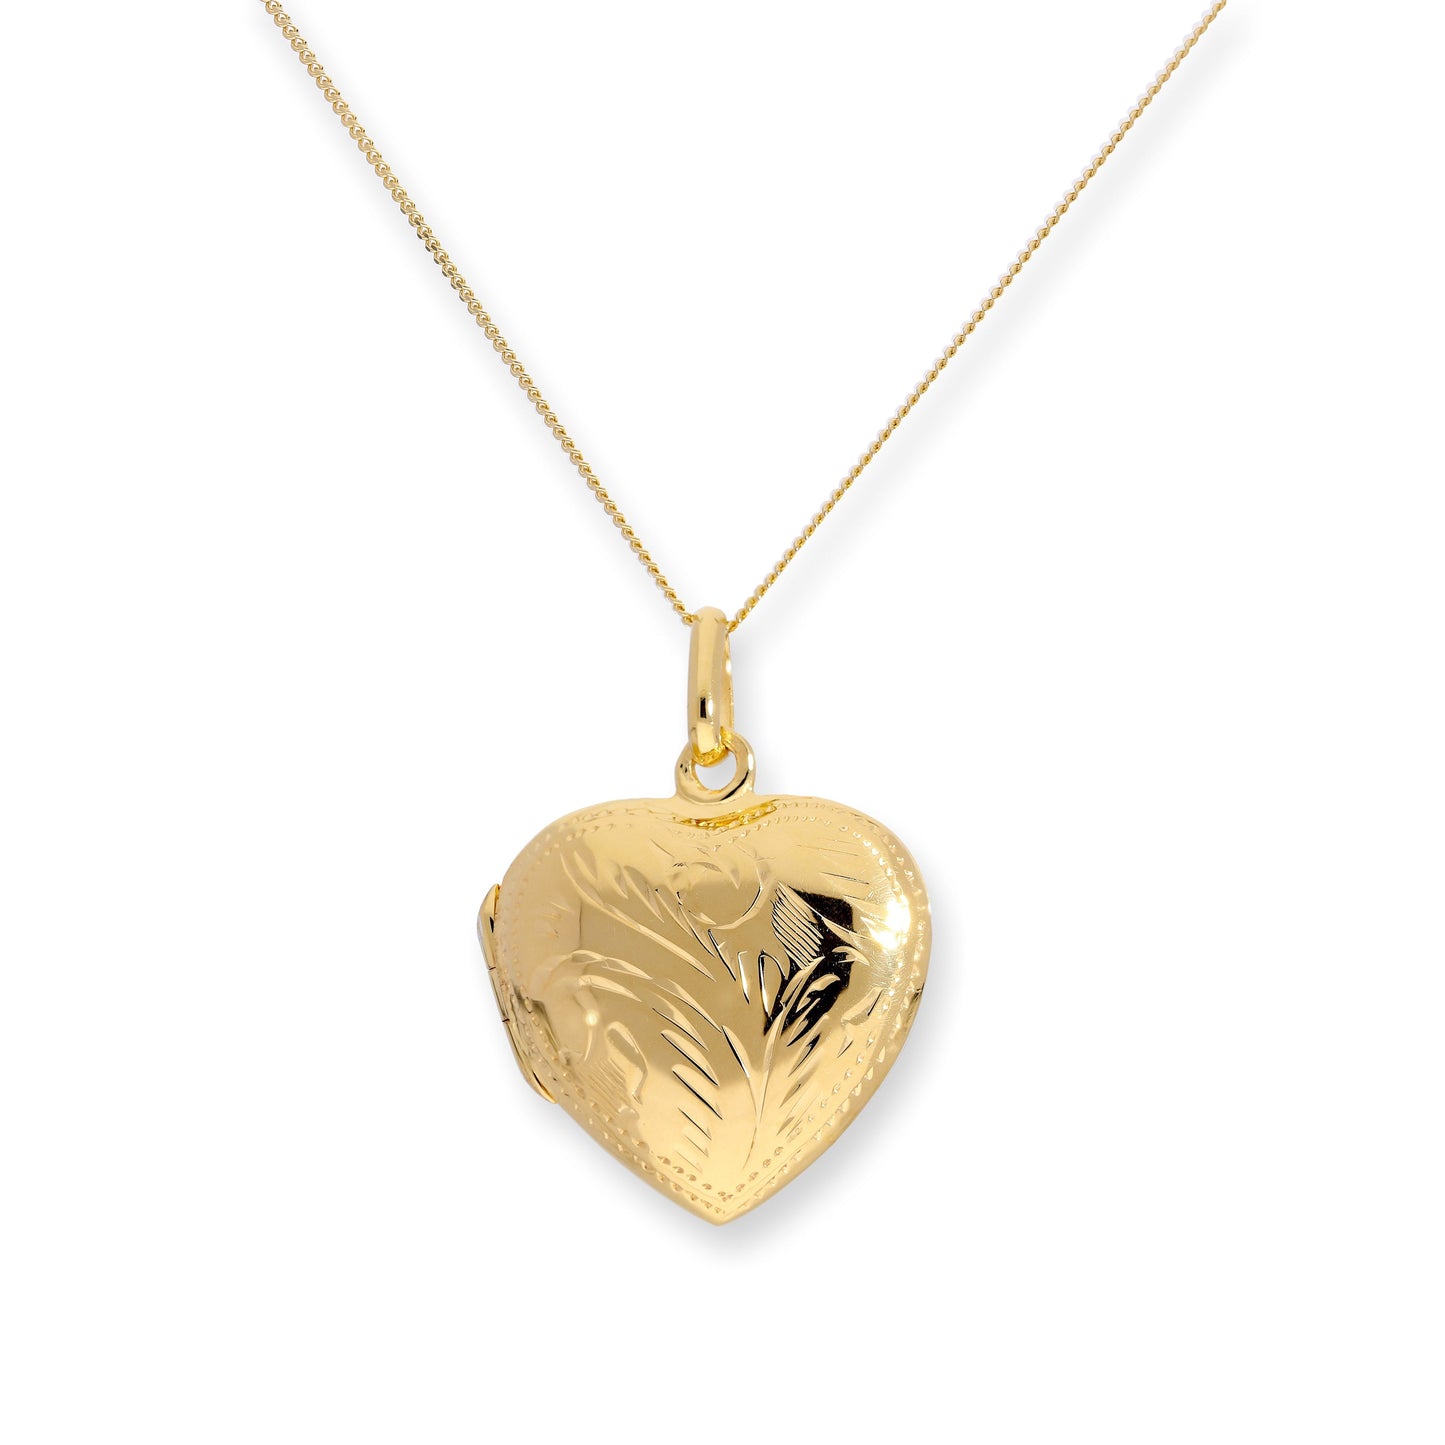 Vergoldet Sterlingsilber Graviert Herz Medaillon an Kette 40,5 - 56cm